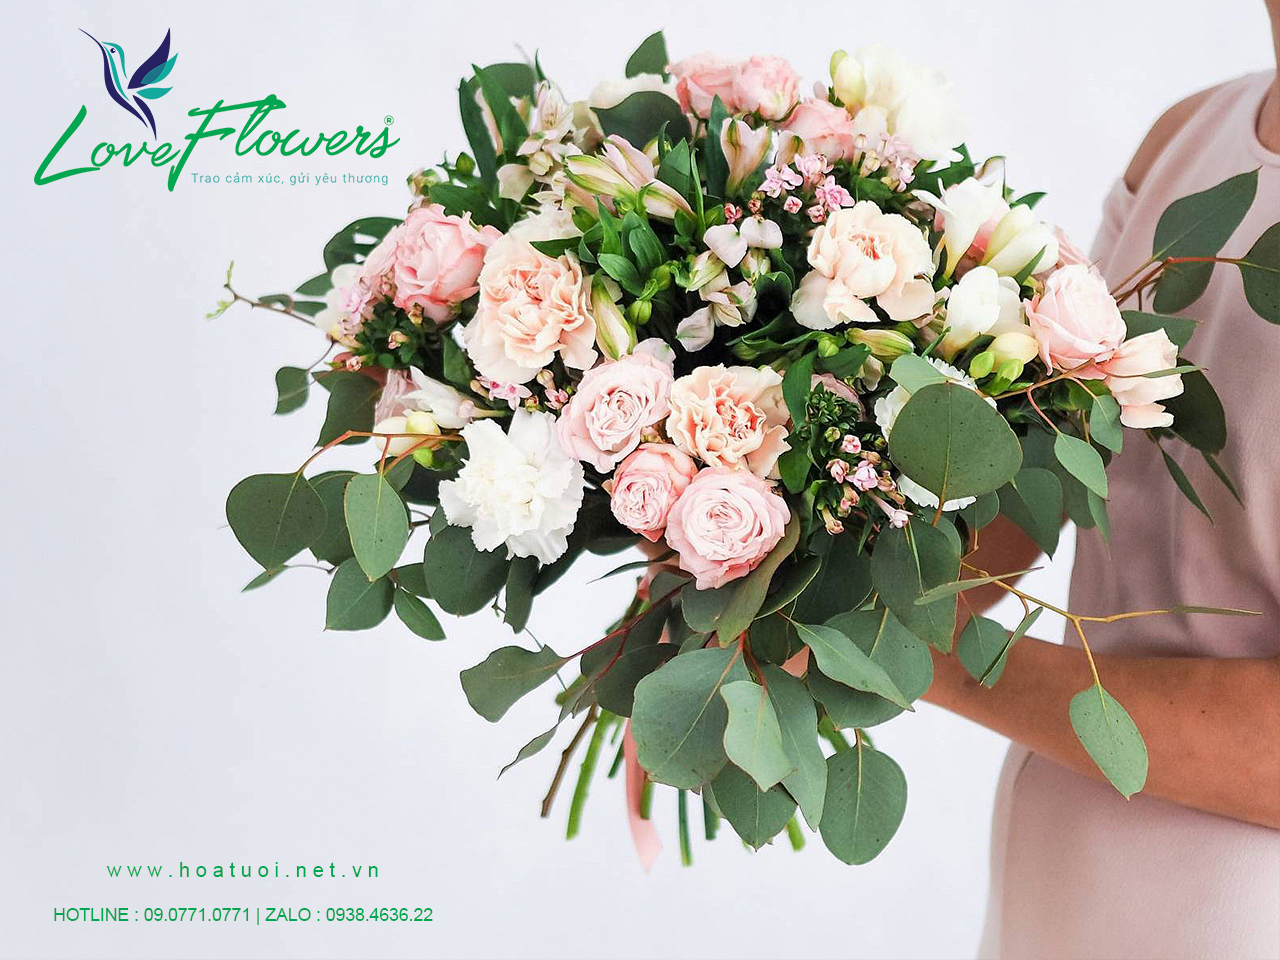 Shop Hoa Tươi Love Flowers tại thành phố Vĩnh Yên, Vĩnh Phúc